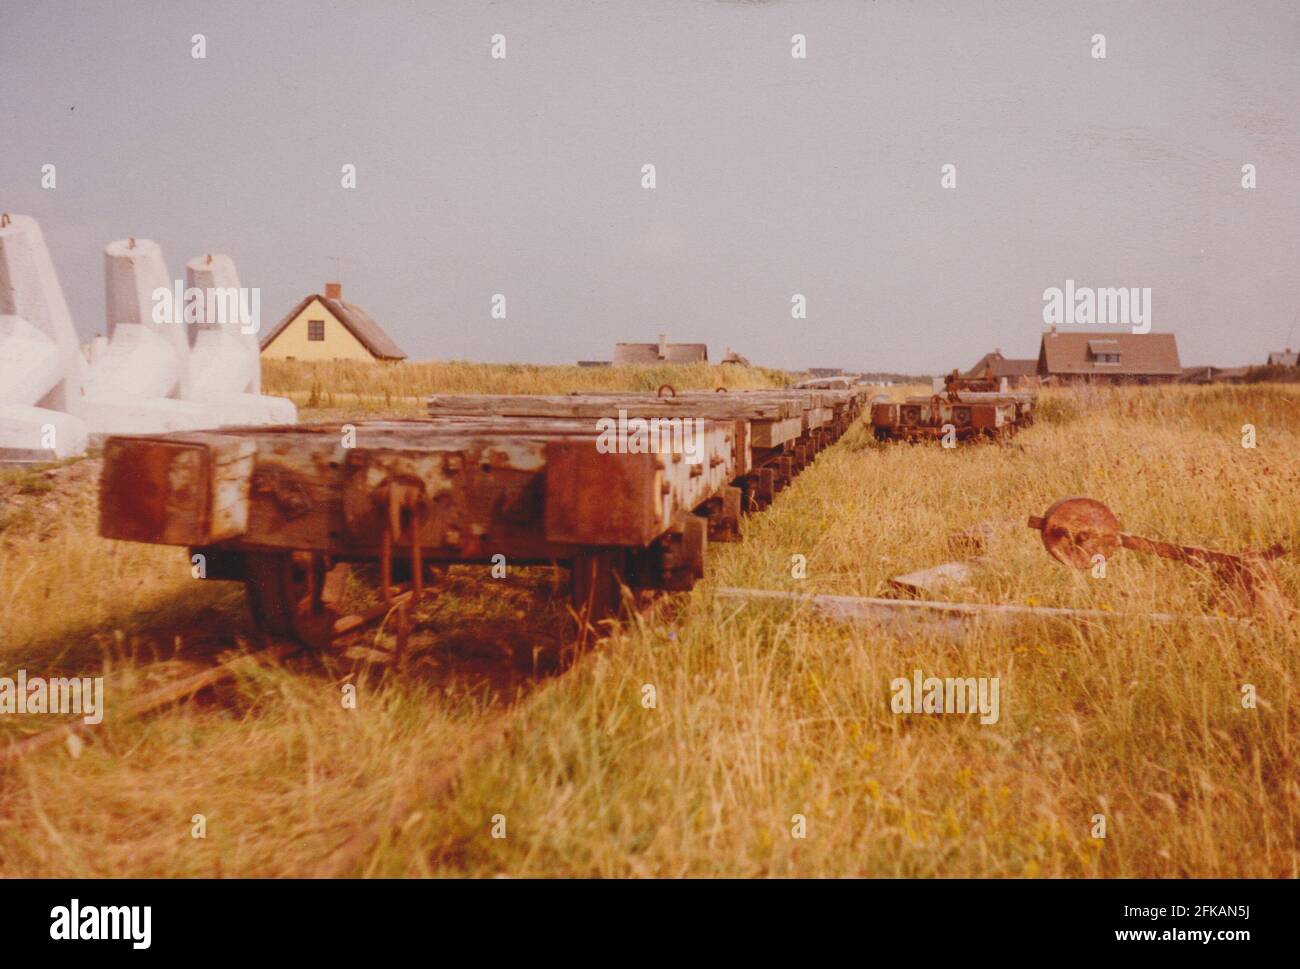 Agger, Danimarca - 1983: Le officine della manutenzione della conca 'Vandbygningsvsenet' con i binari ferroviari a scartamento ridotto (785mm) ora rimossi. Carrelli di rotaia disposti per la rottamazione. Foto Stock